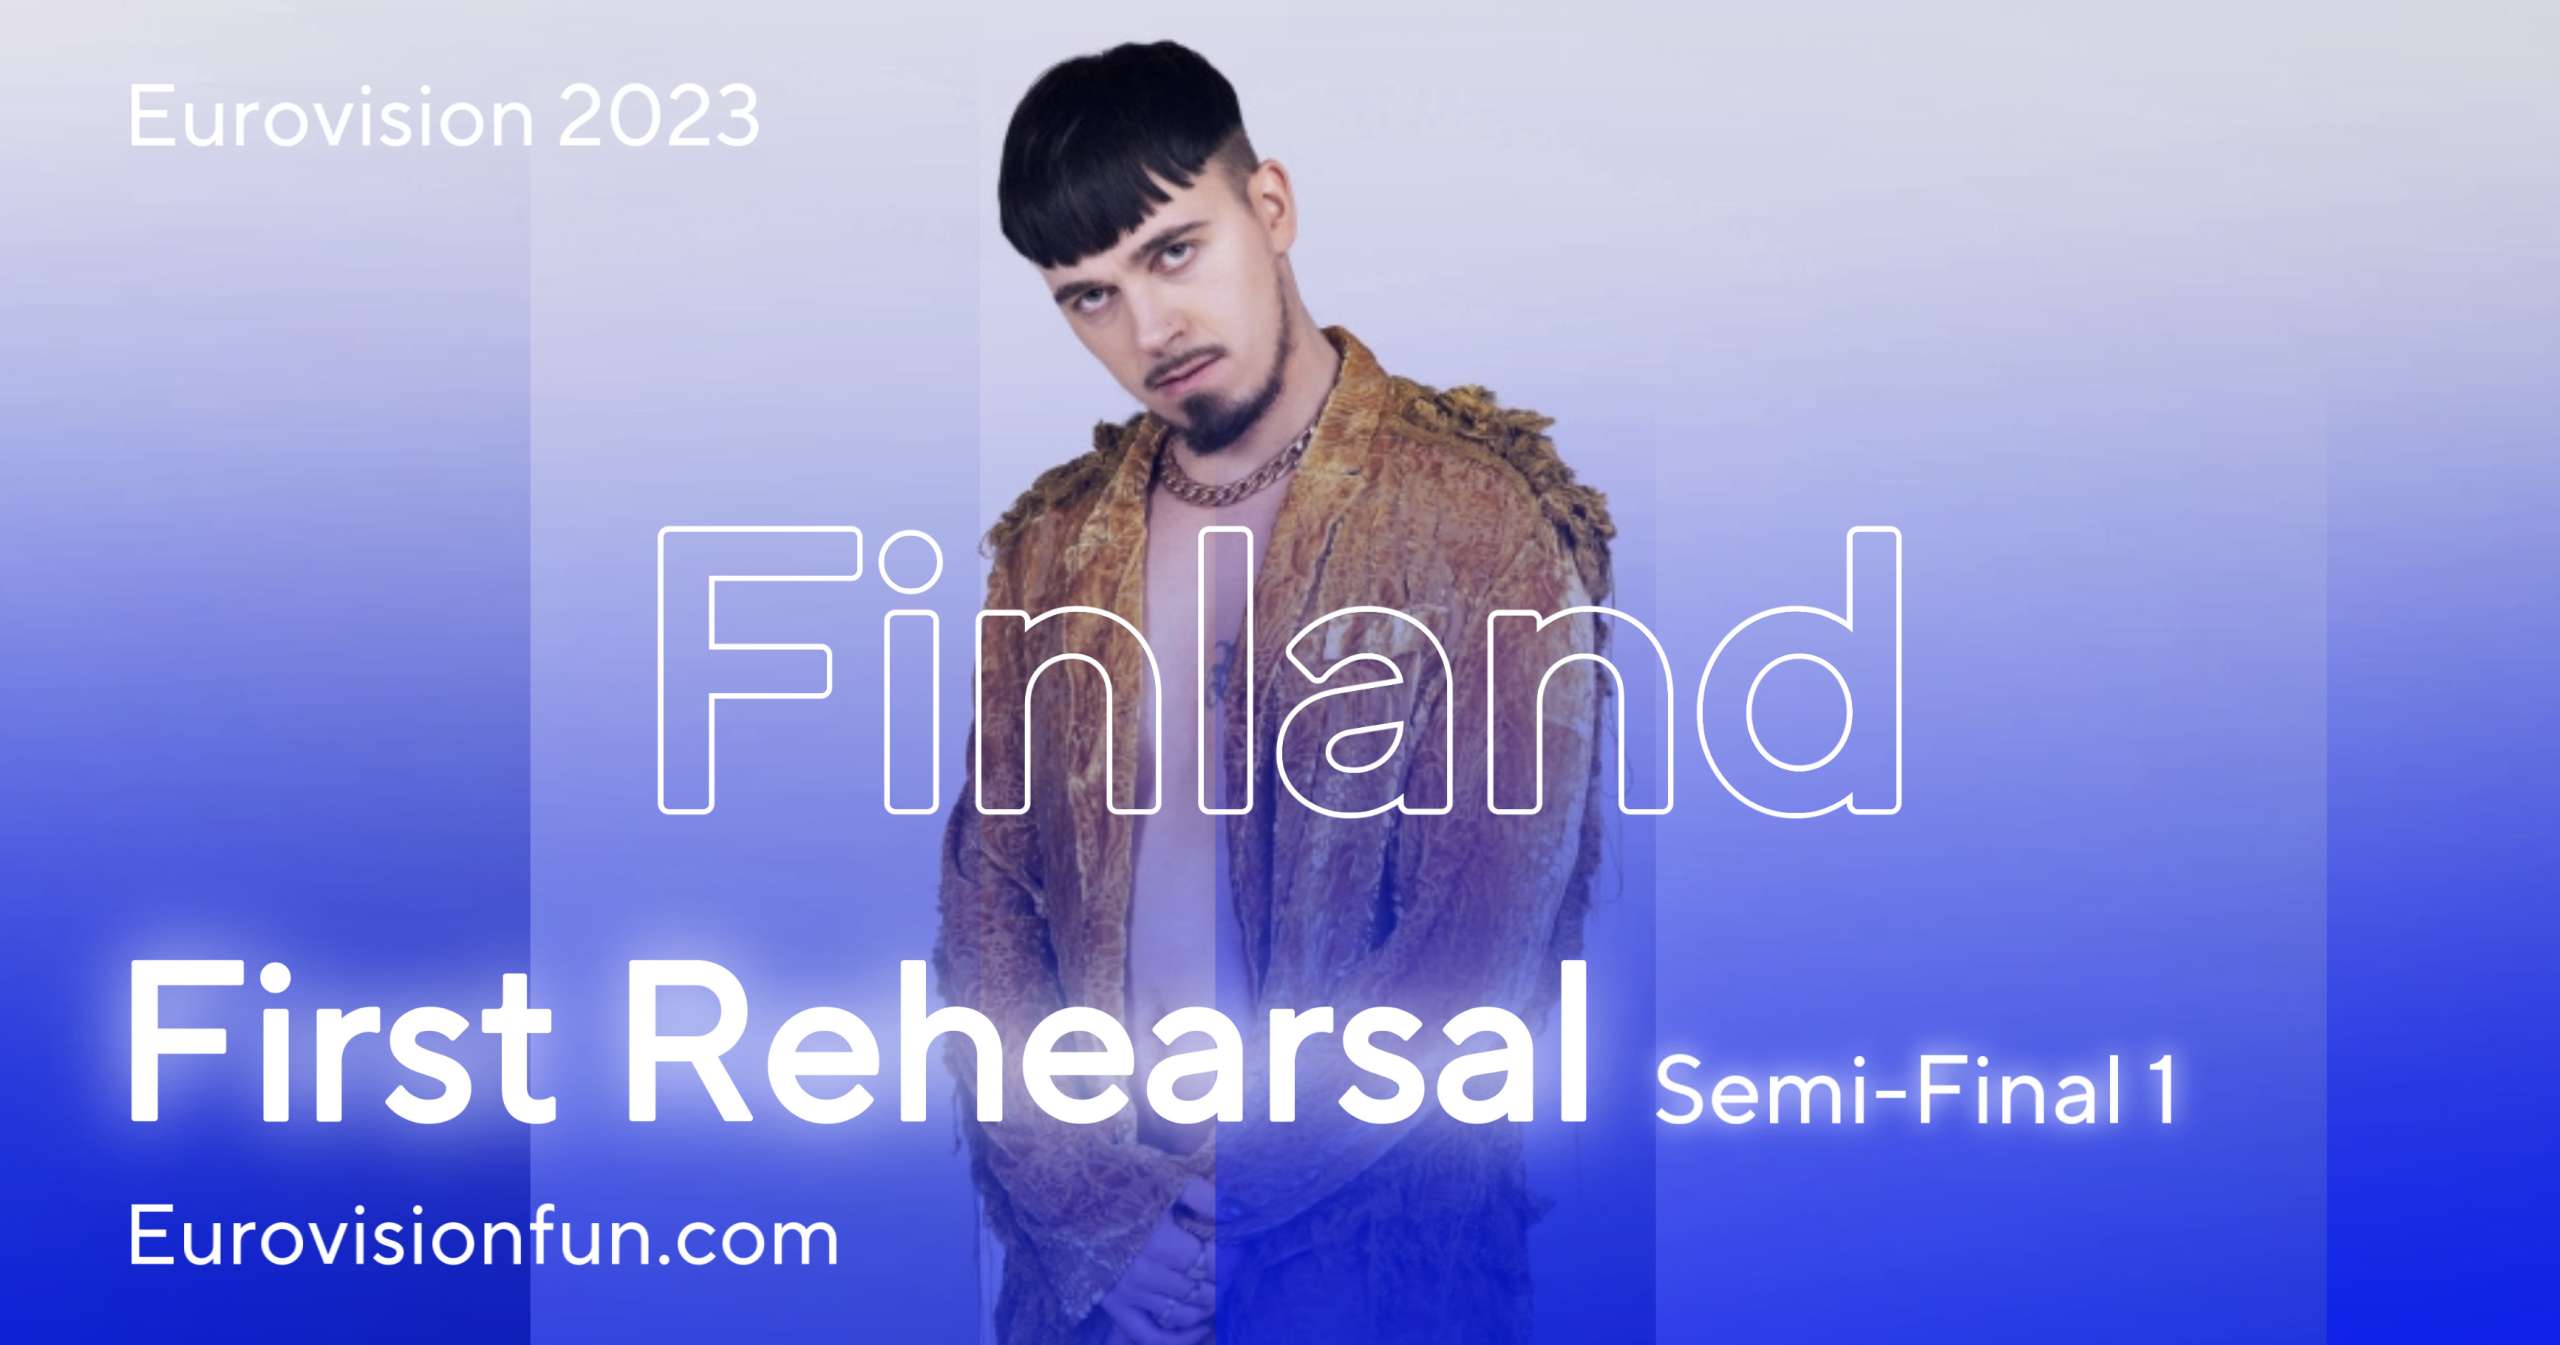 Esc 2023 Finland Lyrics